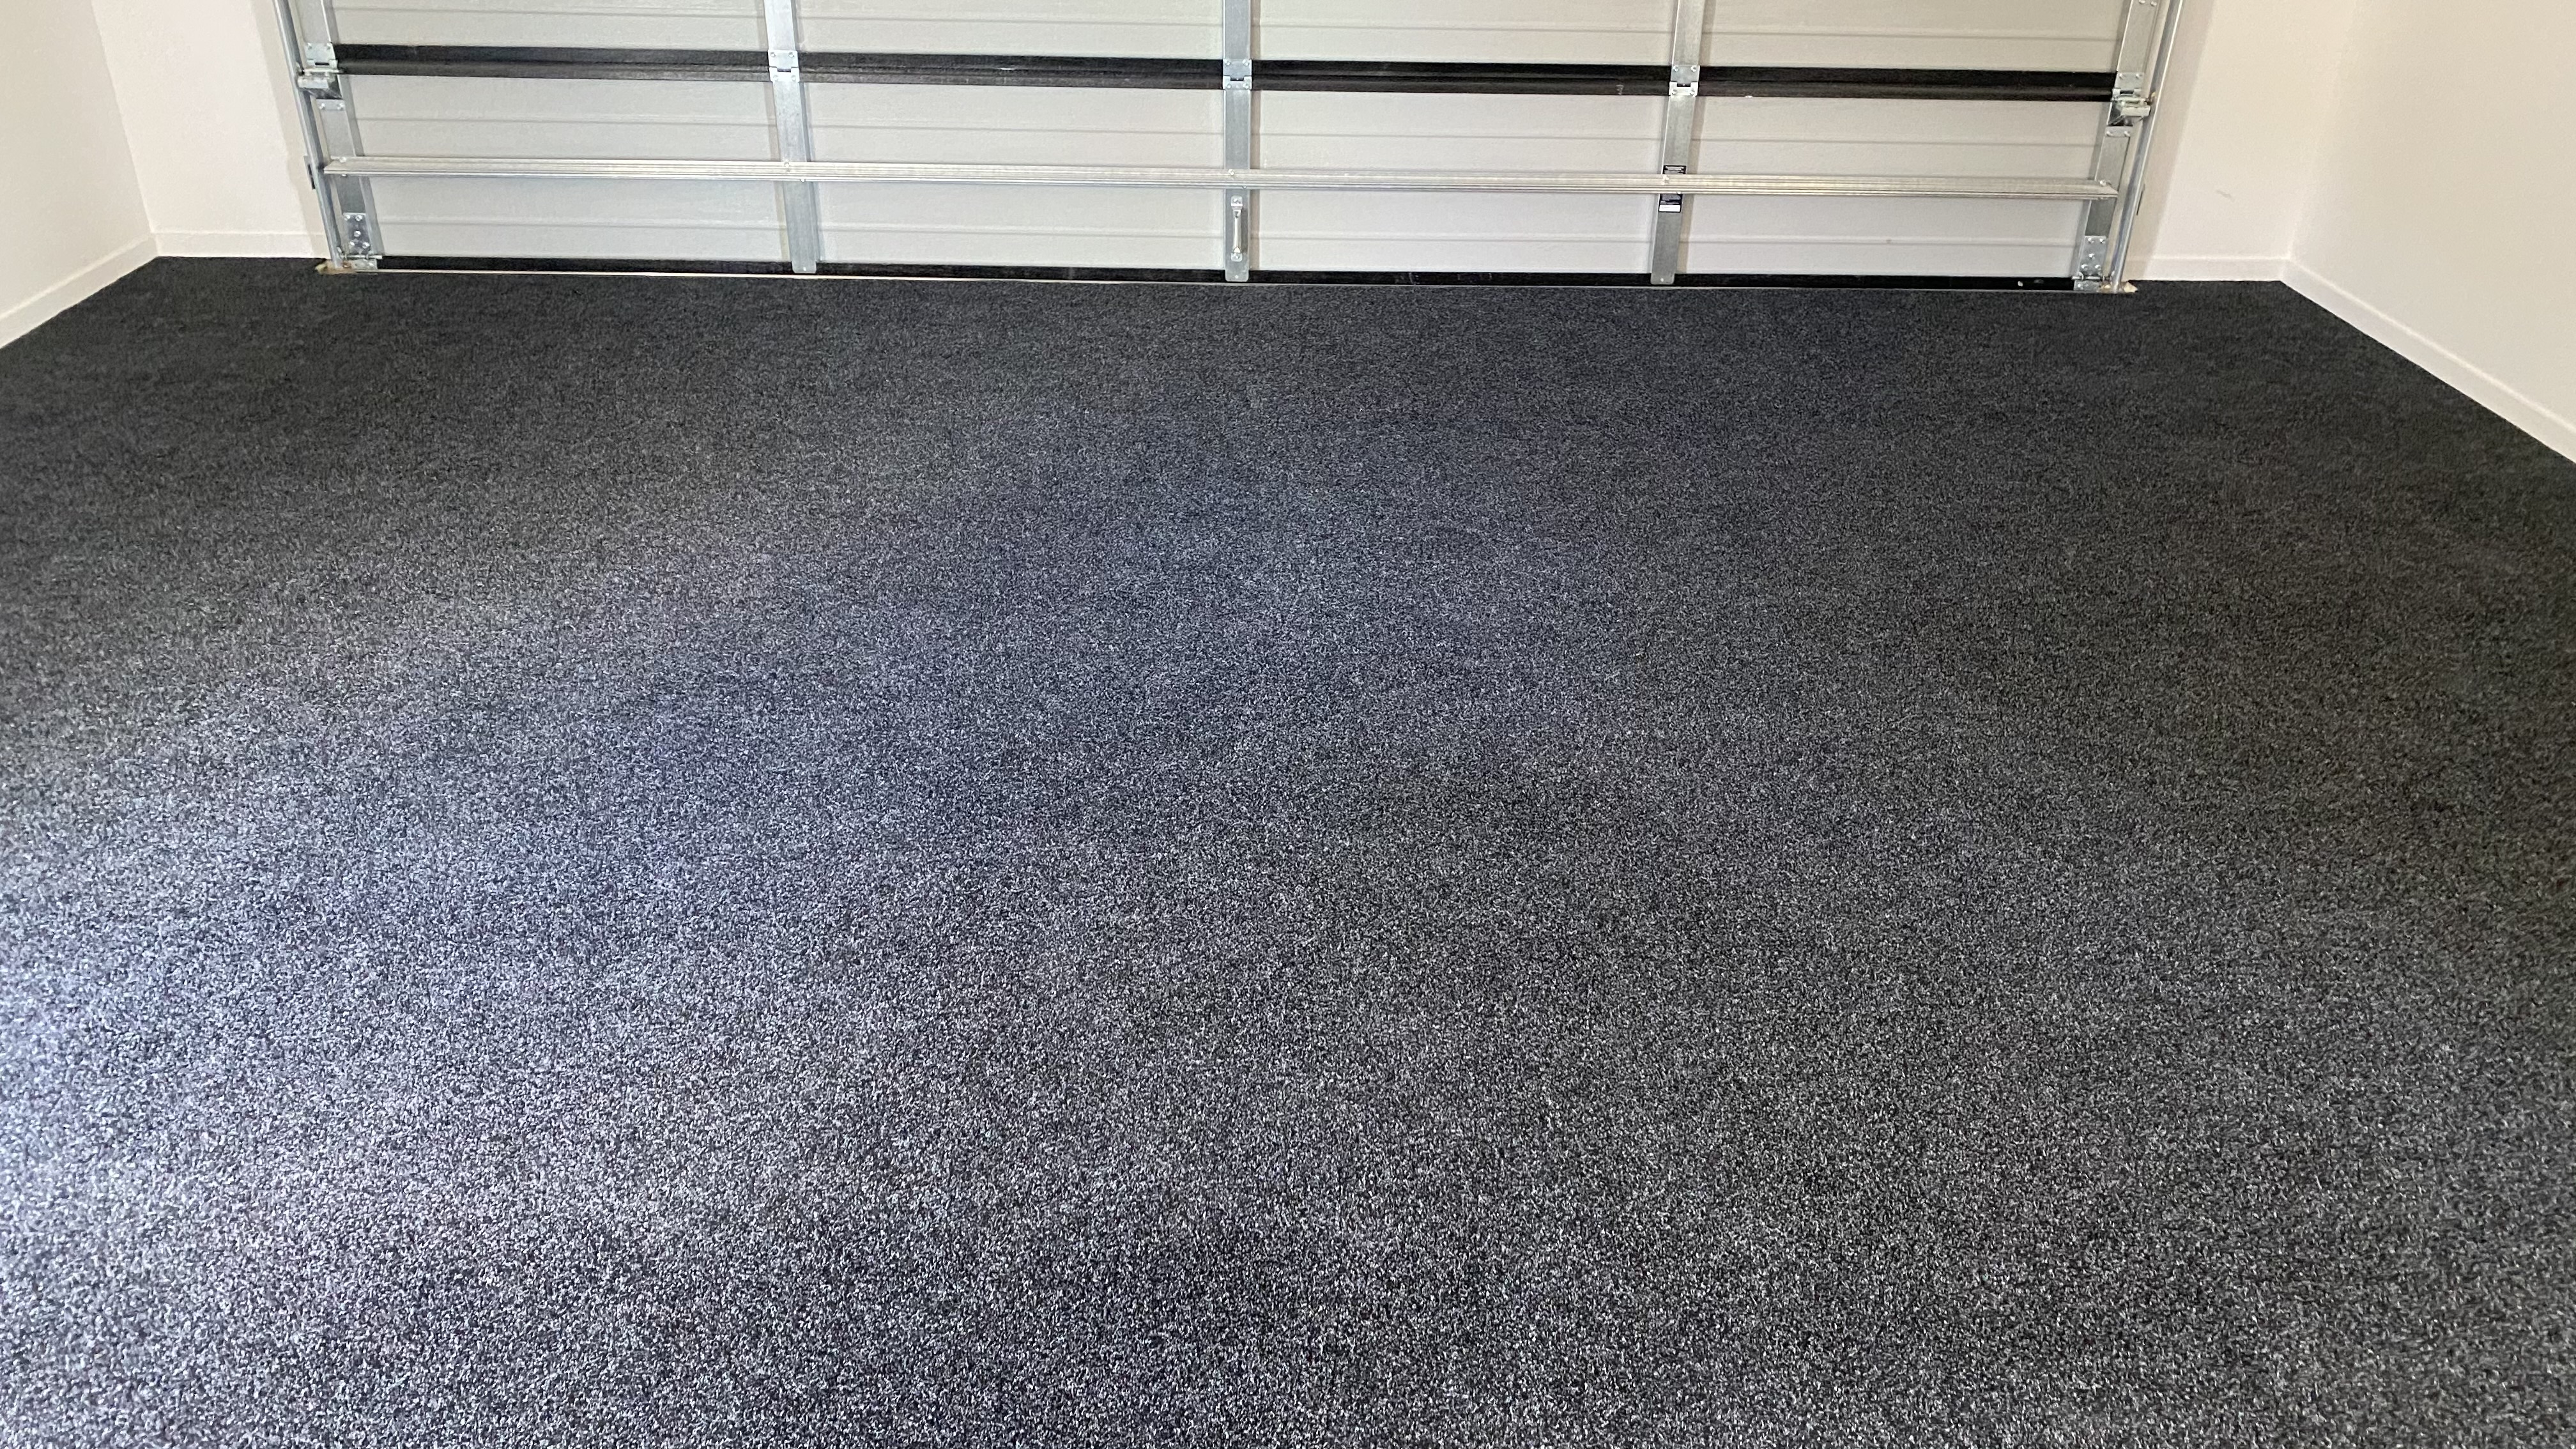 Home - NZ Garage Carpets